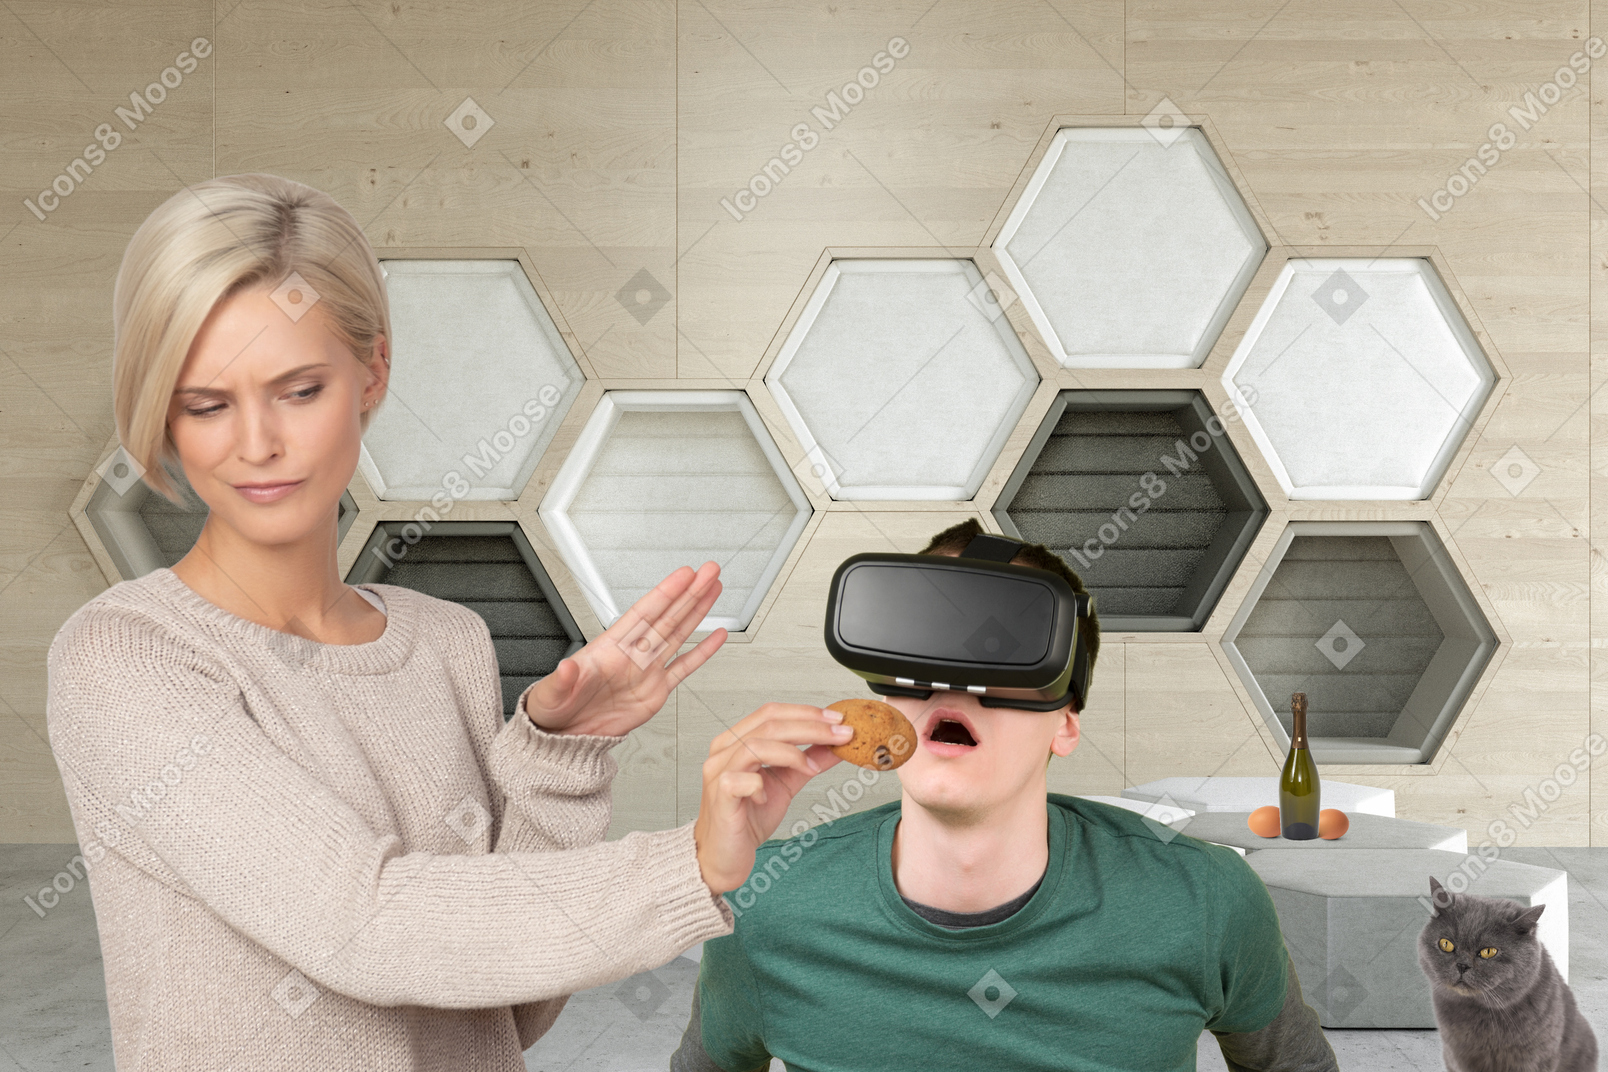 Женщина кормит печеньем удивленного мужчину с гарнитурой виртуальной реальности